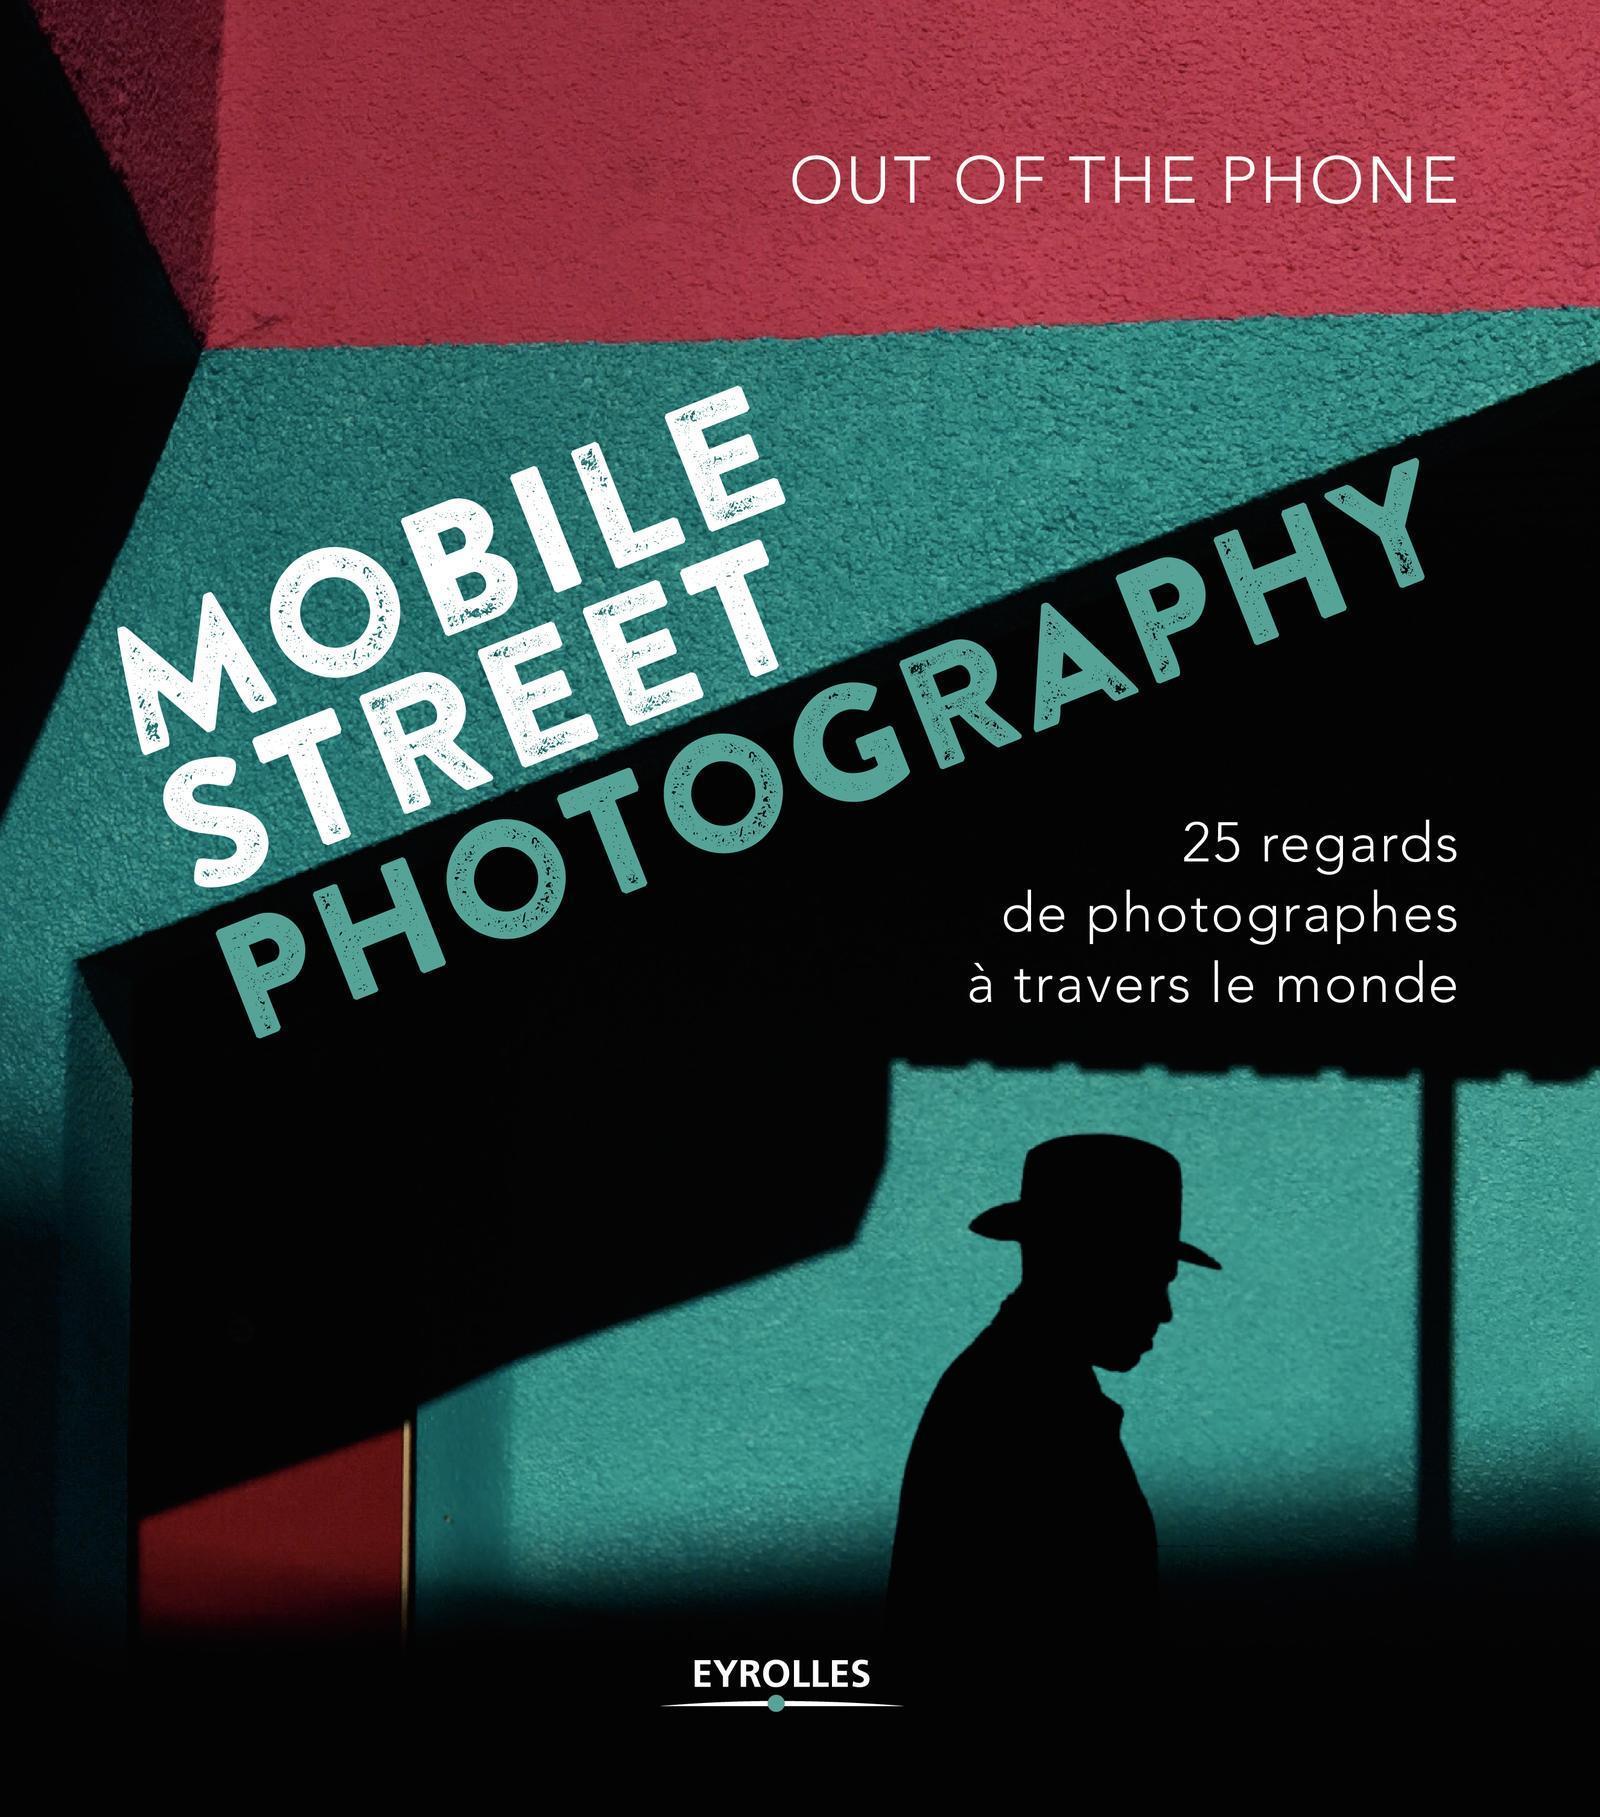 Mobile Street Photography, 25 regards de photographes à travers le monde (9782212674040-front-cover)